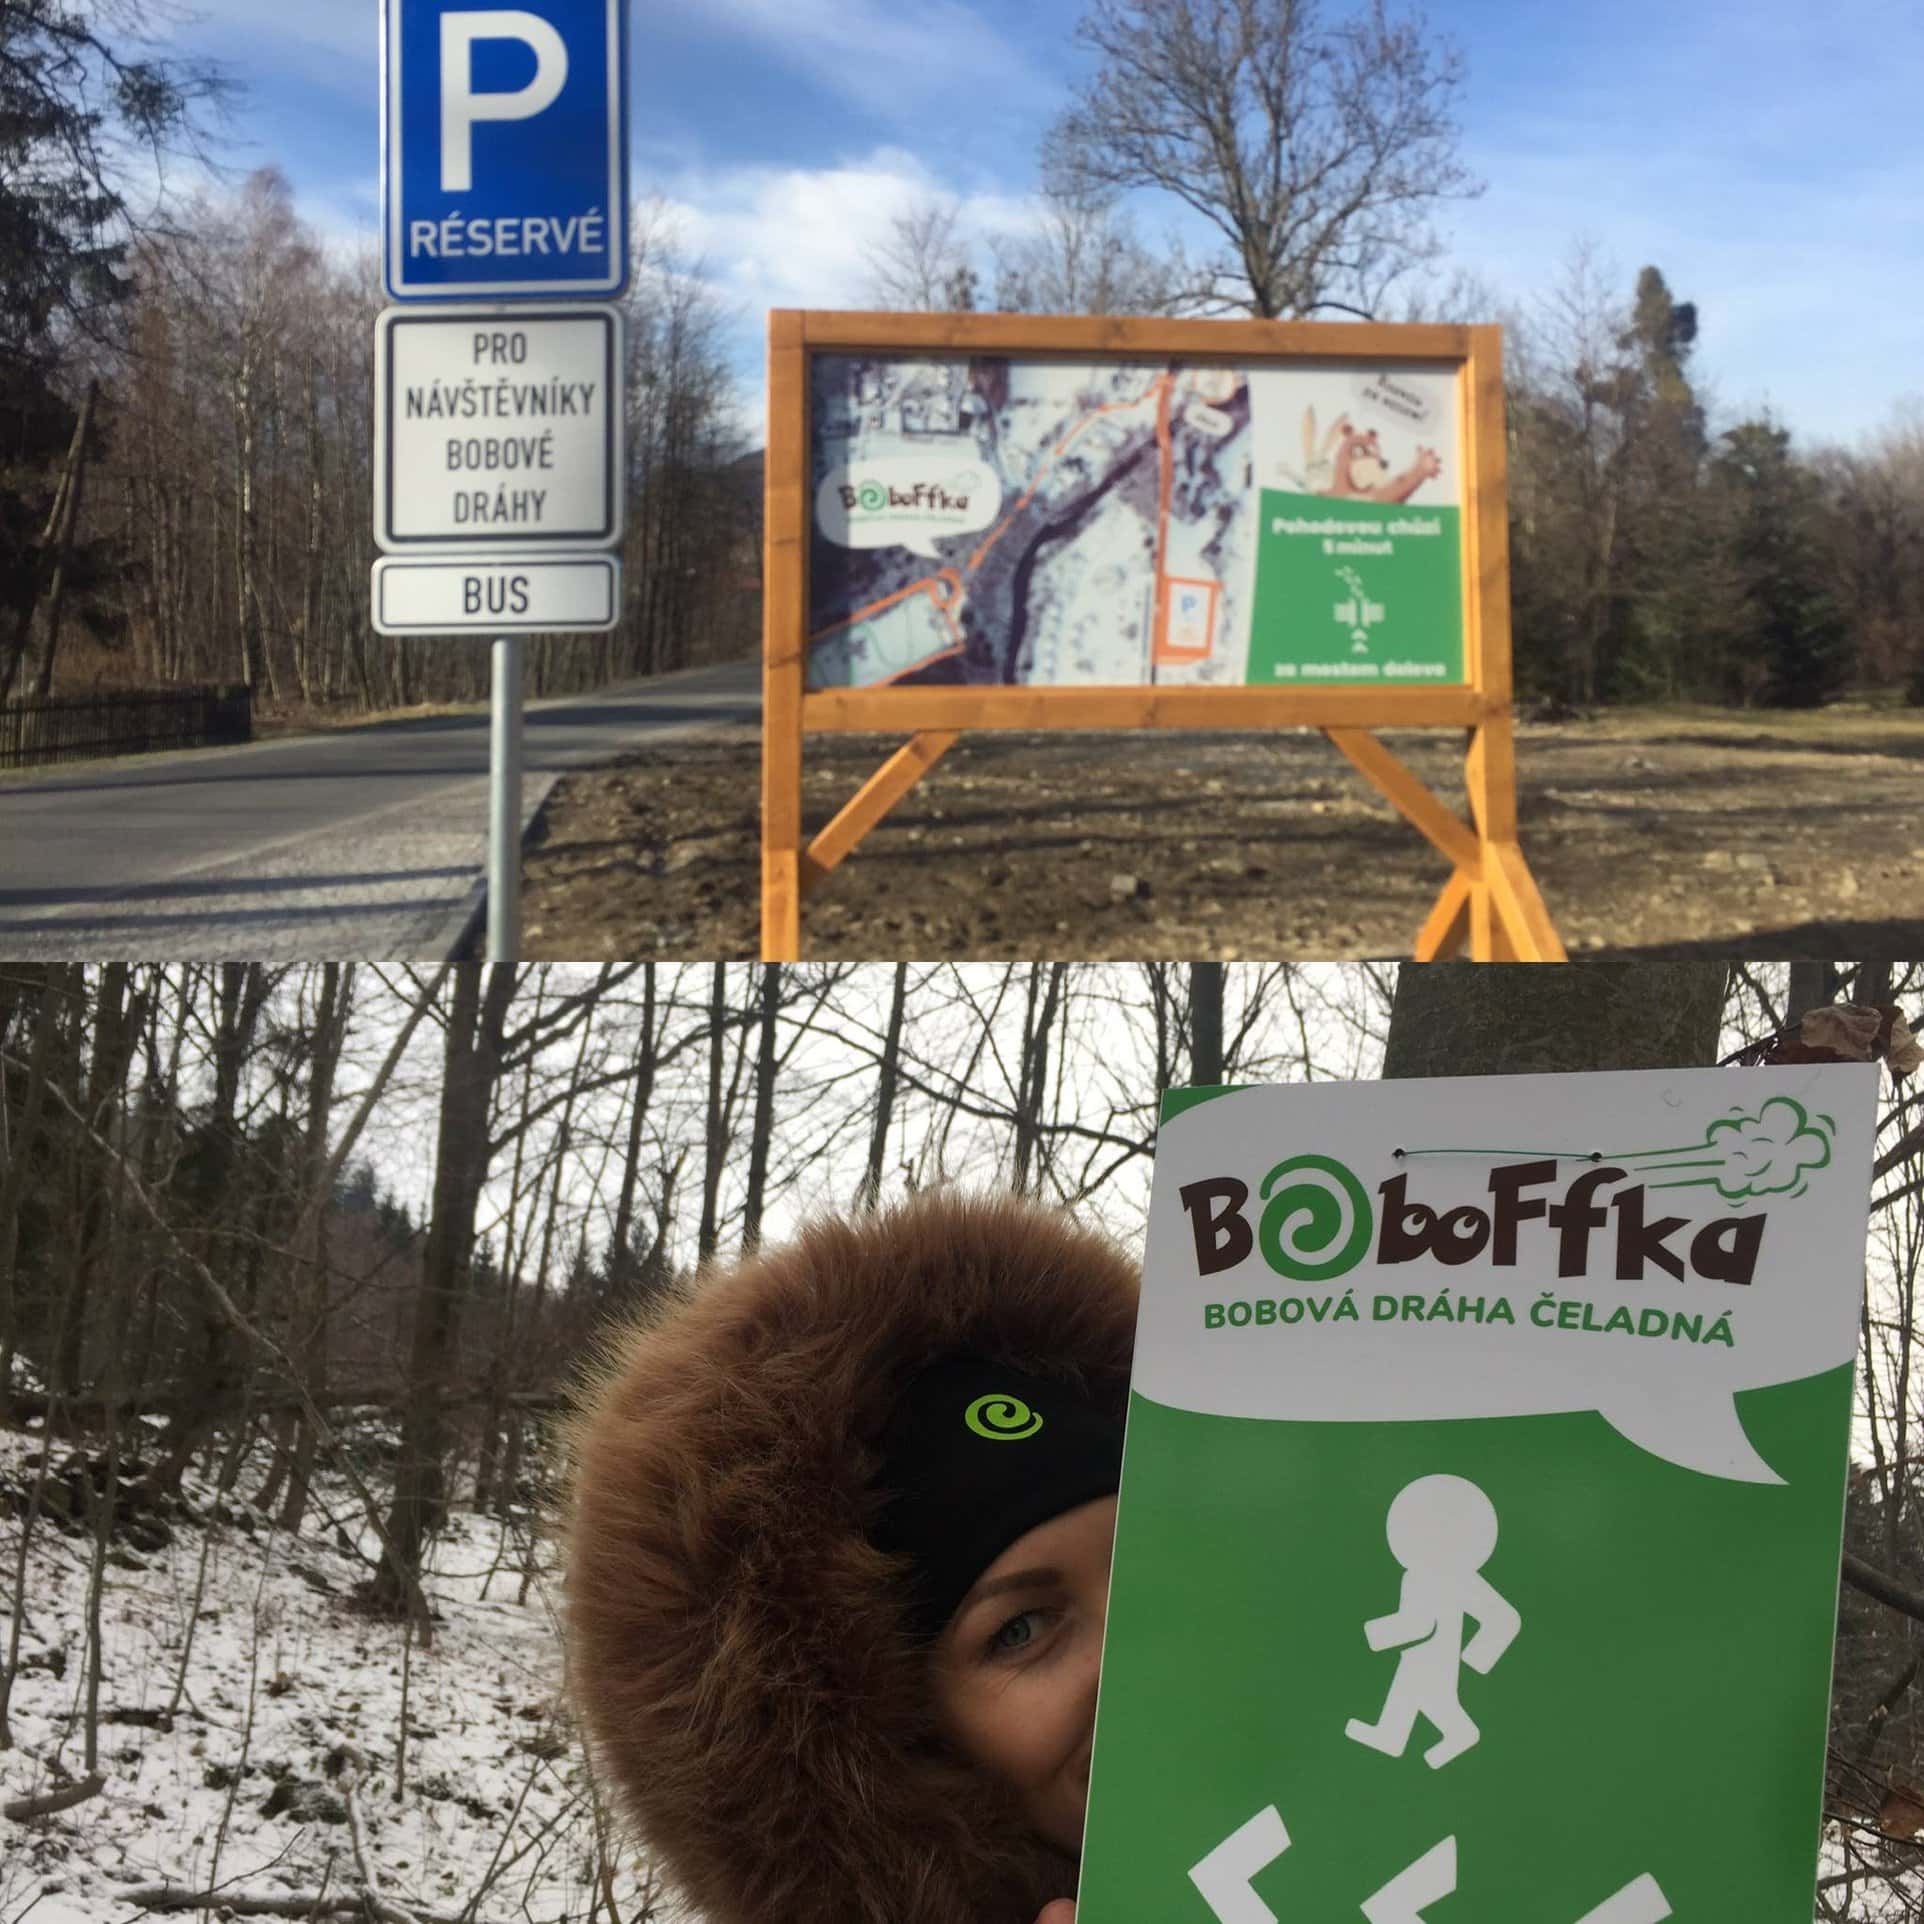 Boboffka - Bobová dráha Čeladná